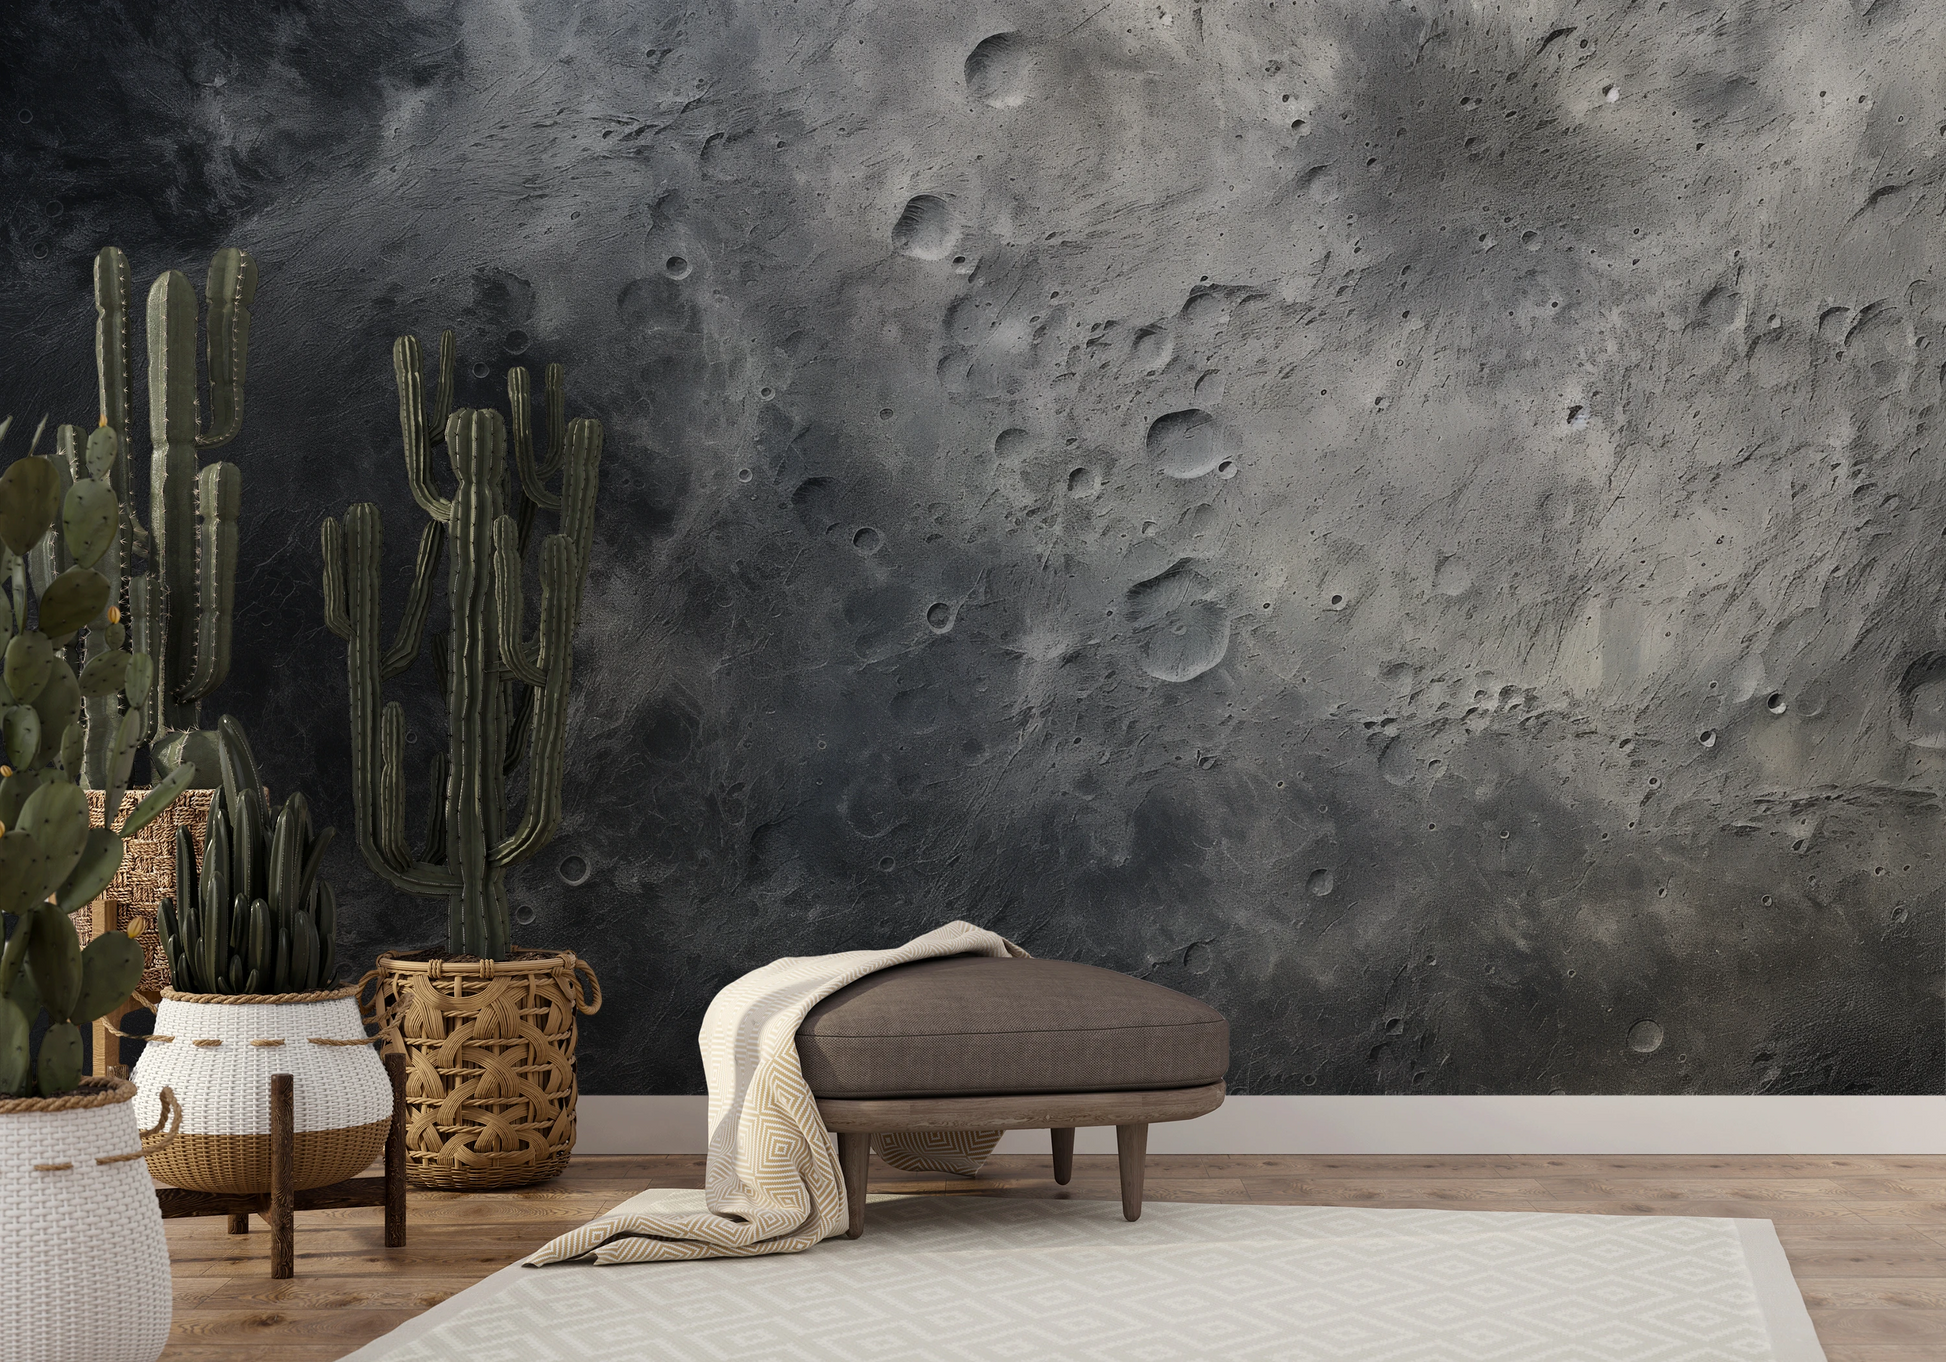 Wzór fototapety artystycznej o nazwie Moon's Monochrome #2 pokazanej w aranżacji wnętrza.